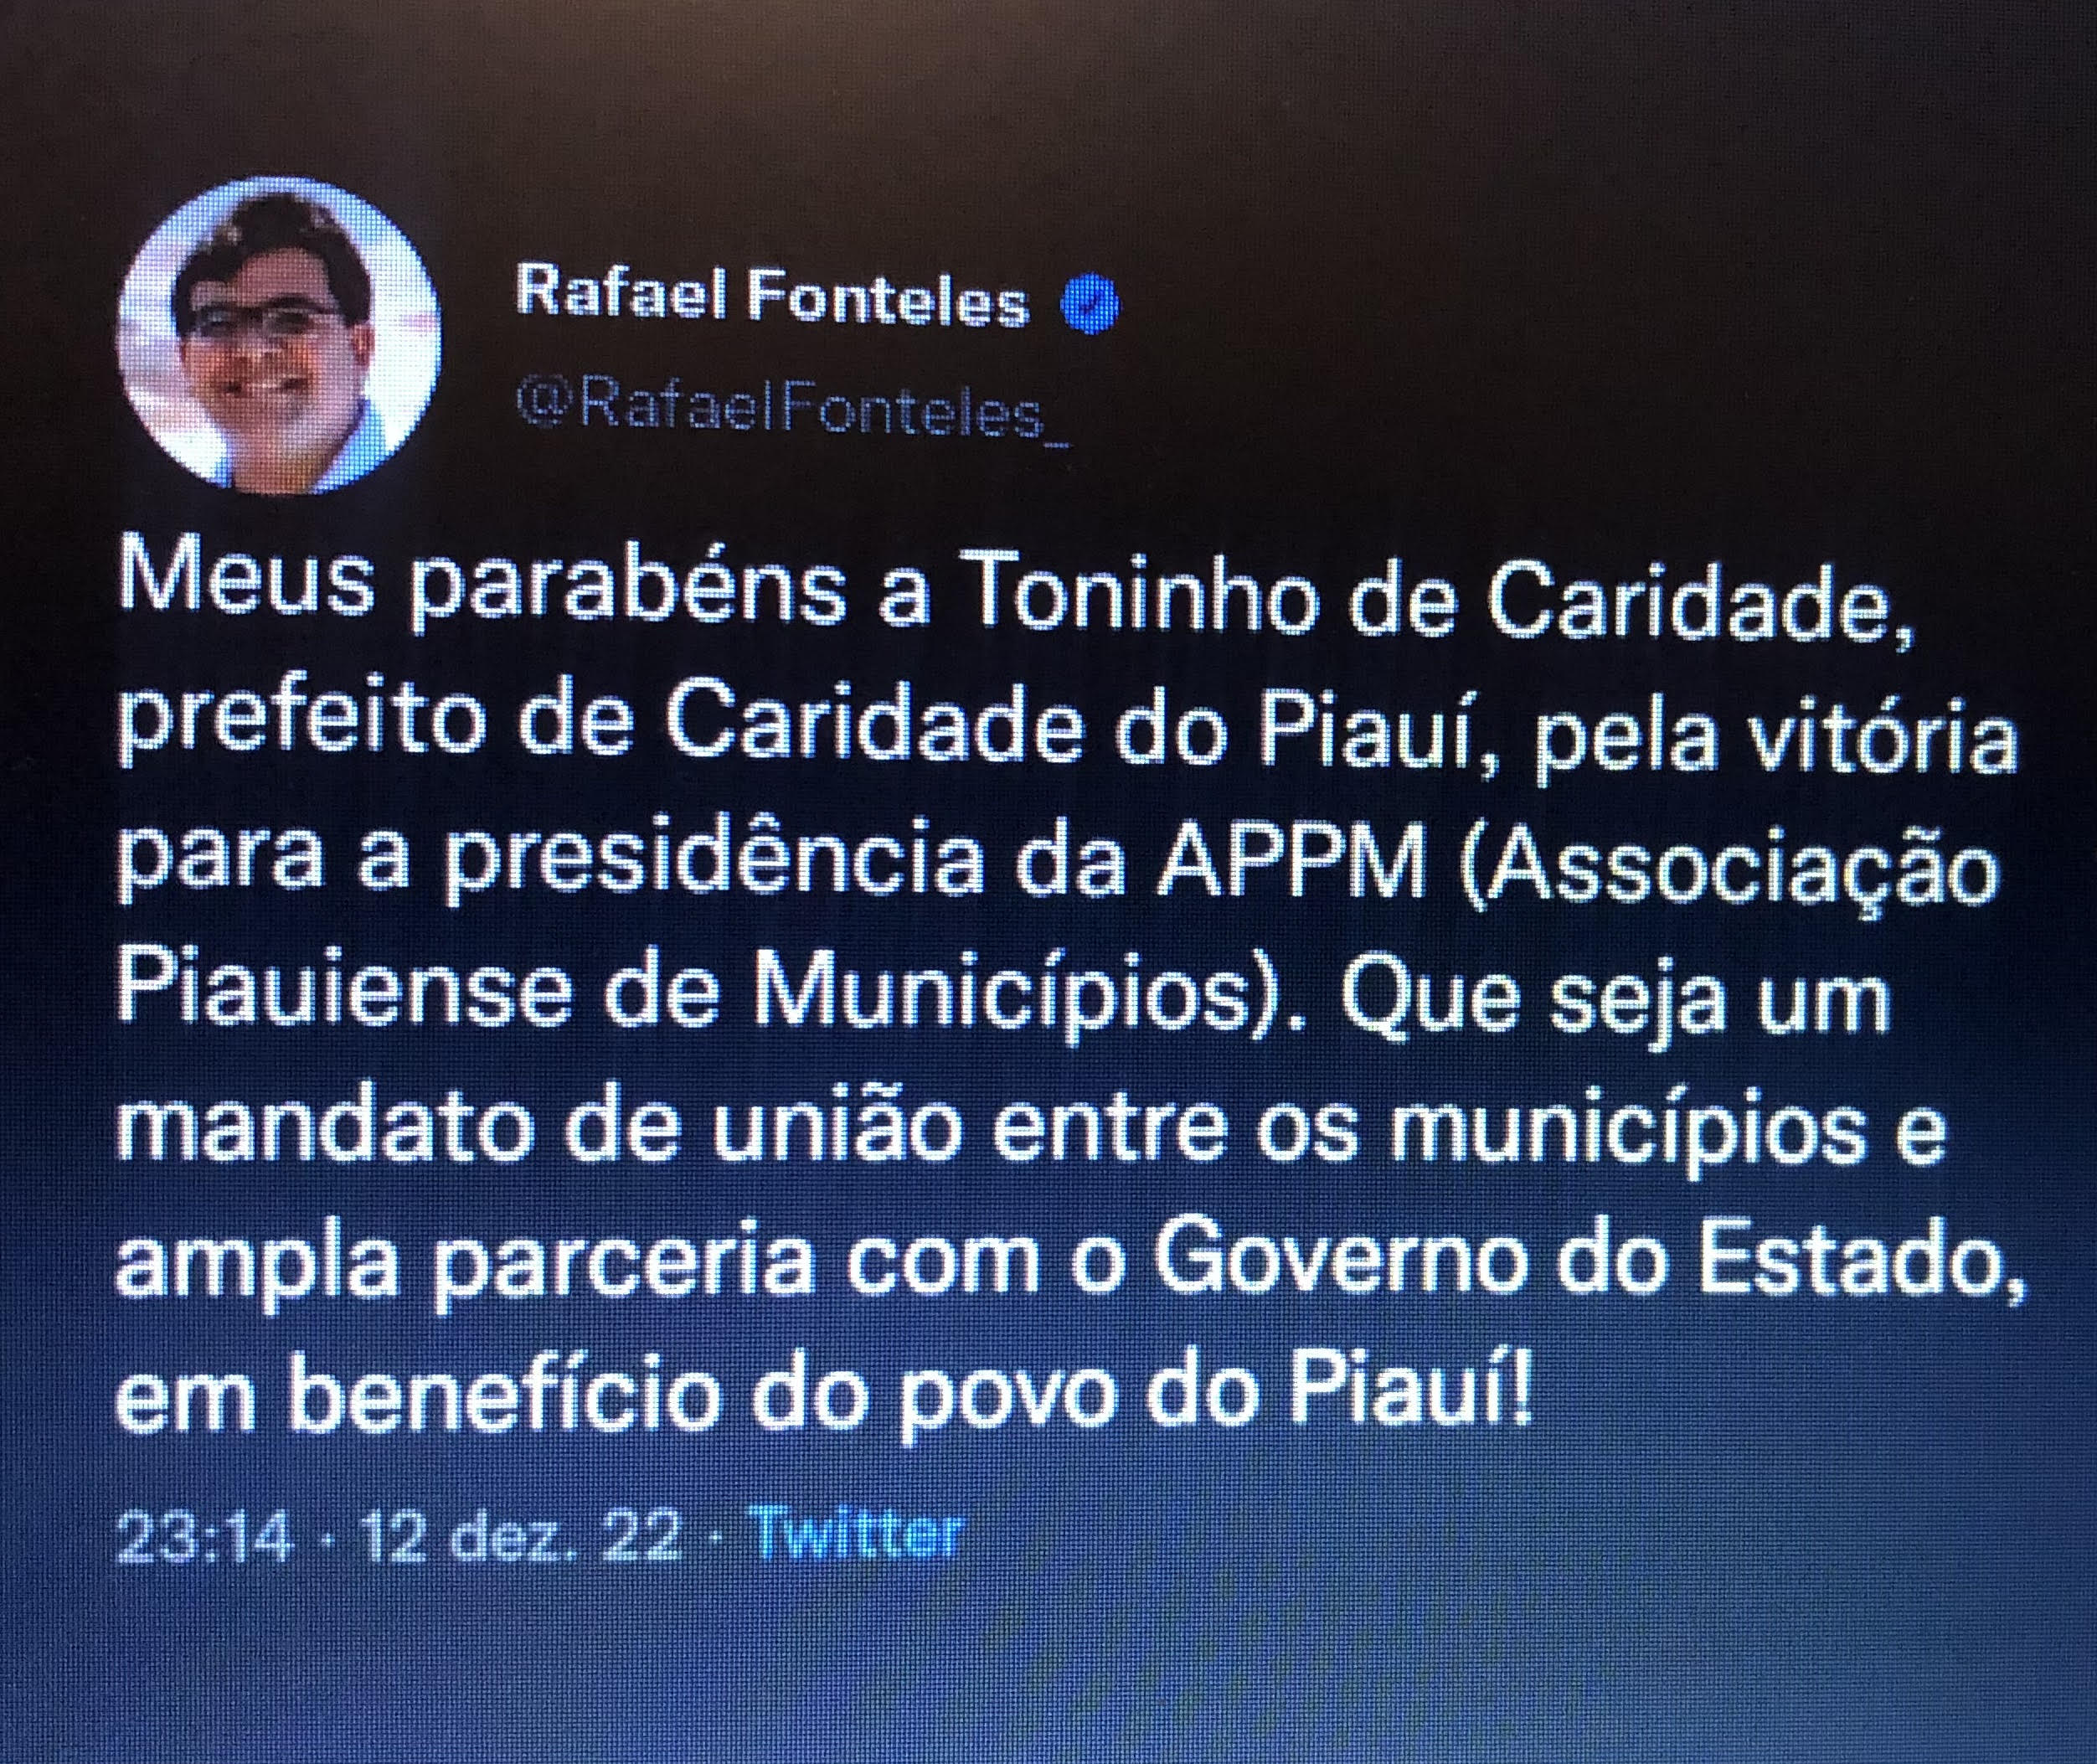 Rafael Fonteles parabeniza Toninho de Caridade do Piauí pela importante vitória.